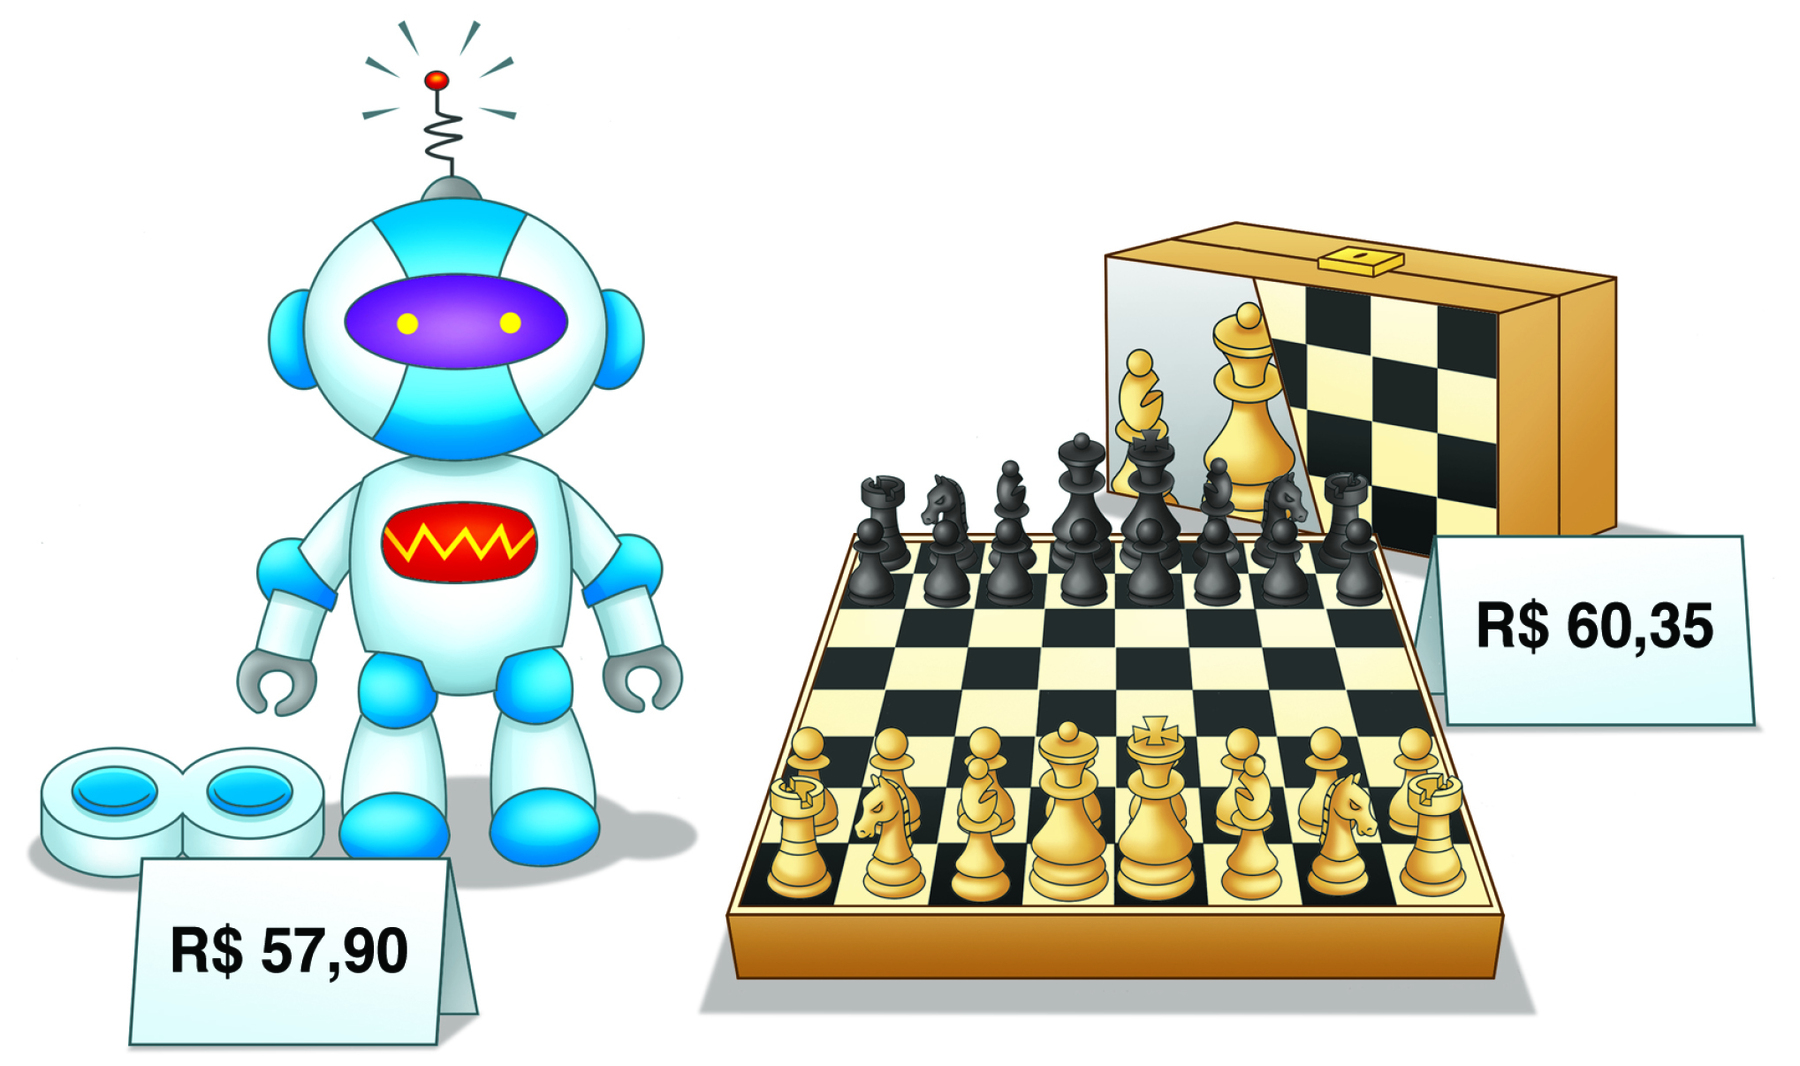 Ilustração. À esquerda robô de brinquedo. A sua frente uma placa com o preço 57 reais e 90 centavos. À direita jogo de xadrez aberto com as peças organizadas sobre ele. Ao fundo uma maleta com um desenho de jogo de xadrez. Na parte da frente, à direita uma placa com o preço 60 reais e 35 centavos.